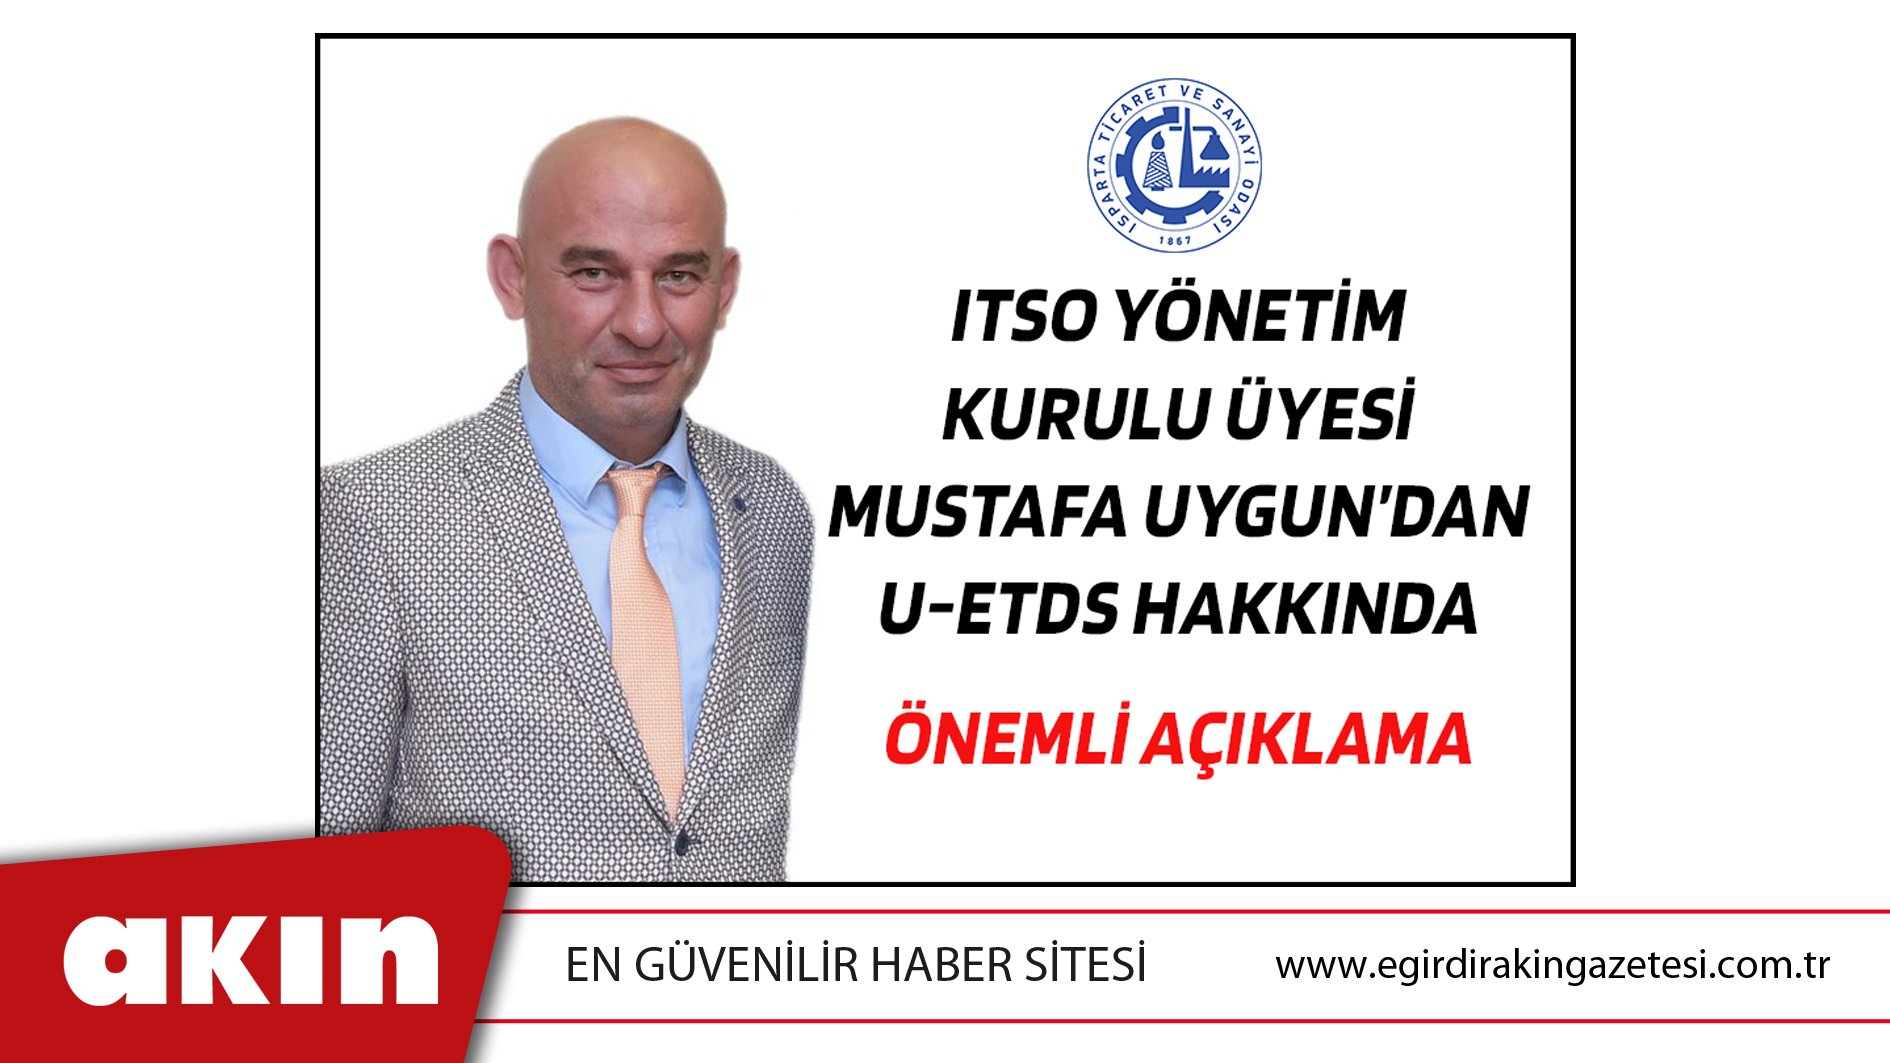 eğirdir haber,akın gazetesi,egirdir haberler,son dakika,ITSO Yönetim Kurulu Üyesi Mustafa Uygun’dan U-ETDS Hakkında Önemli Açıklama